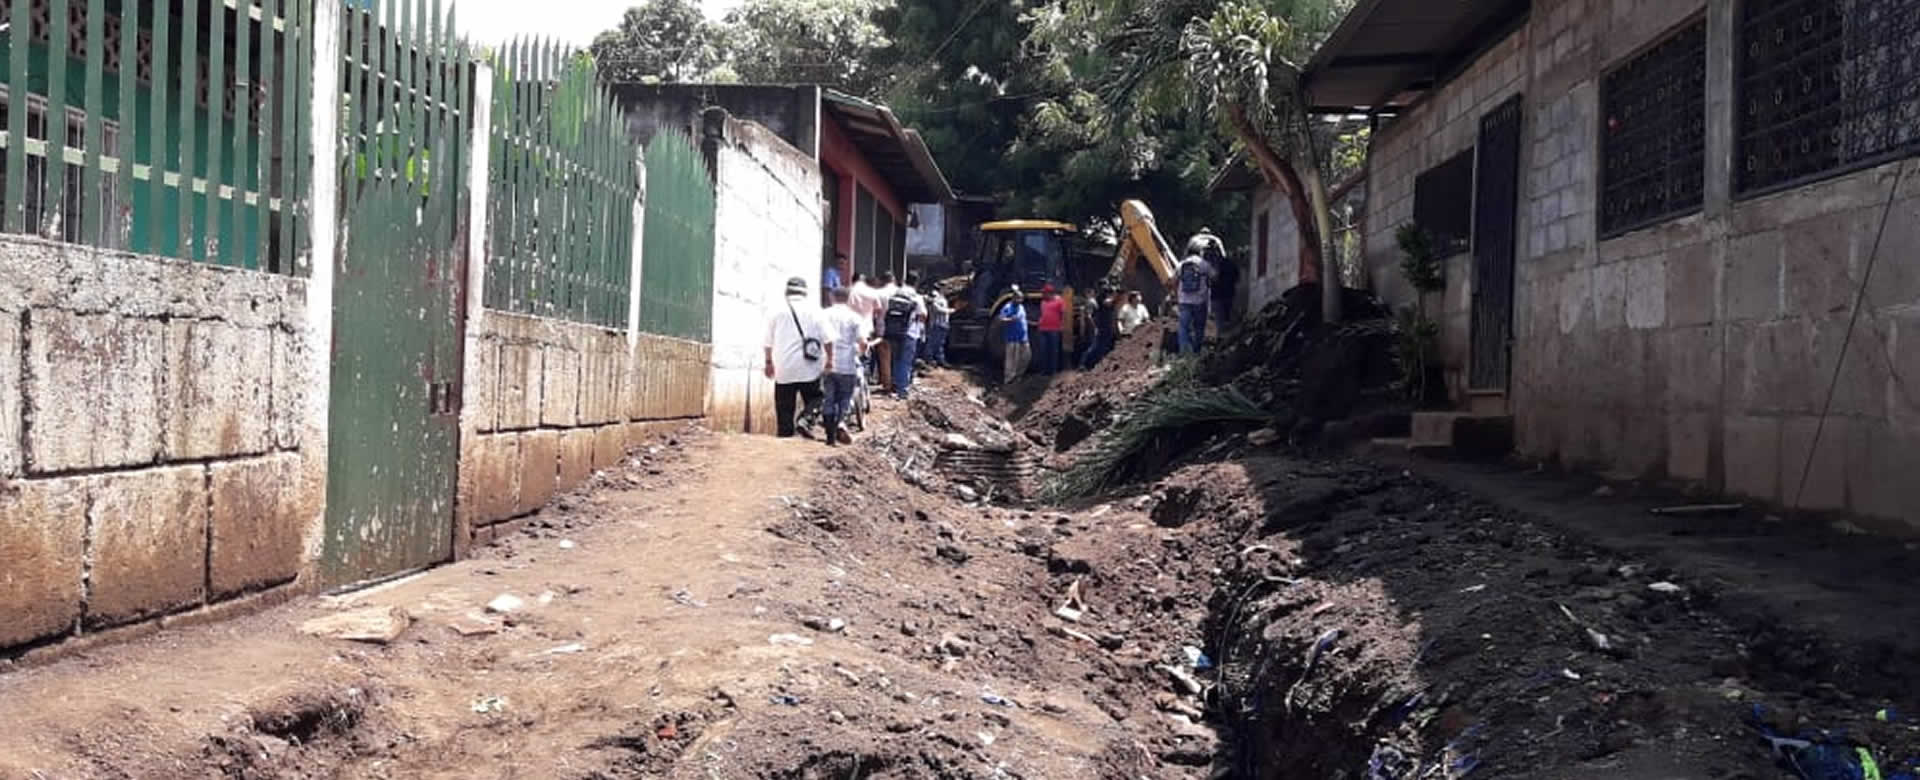 Fuertes lluvias afectan las calles y viviendas de los barrios en Managua